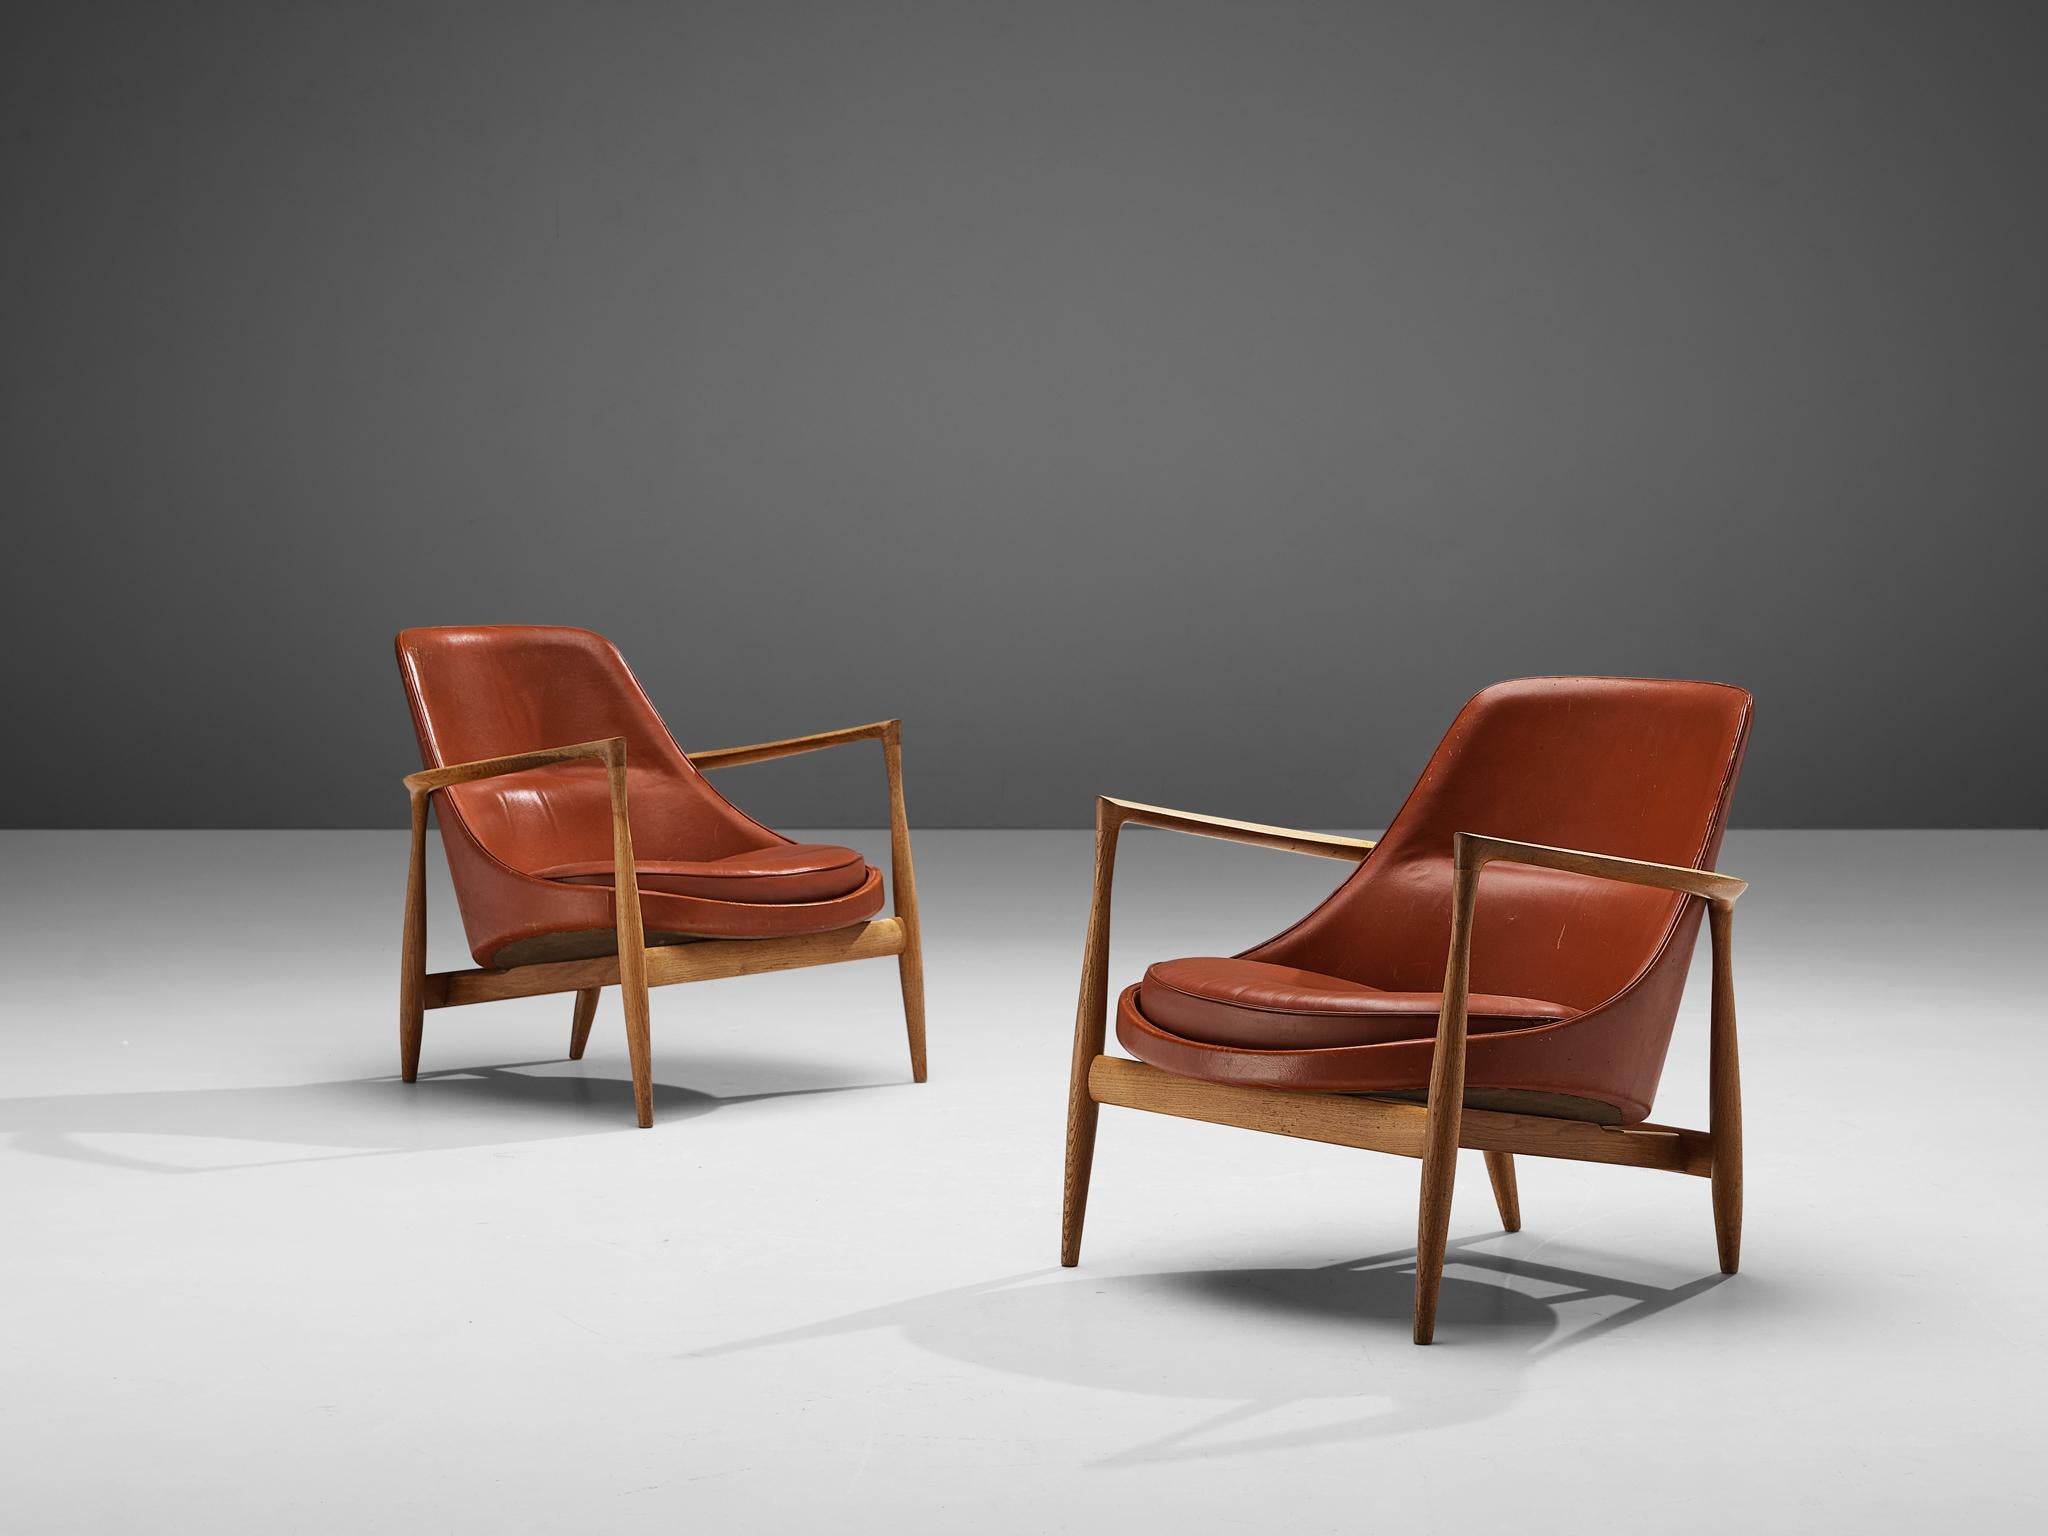 Ib Kofod-Larsen, chaises longues modèle U-56 'Elizabeth', chêne, cuir rouge, Danemark, conçu en 1956

Paire de fauteuils conçus par Ib Kofod-Larsen en 1956. Il s'agit de chaises Kofod-Larsen de la plus haute qualité, avec un cadre en chêne et du